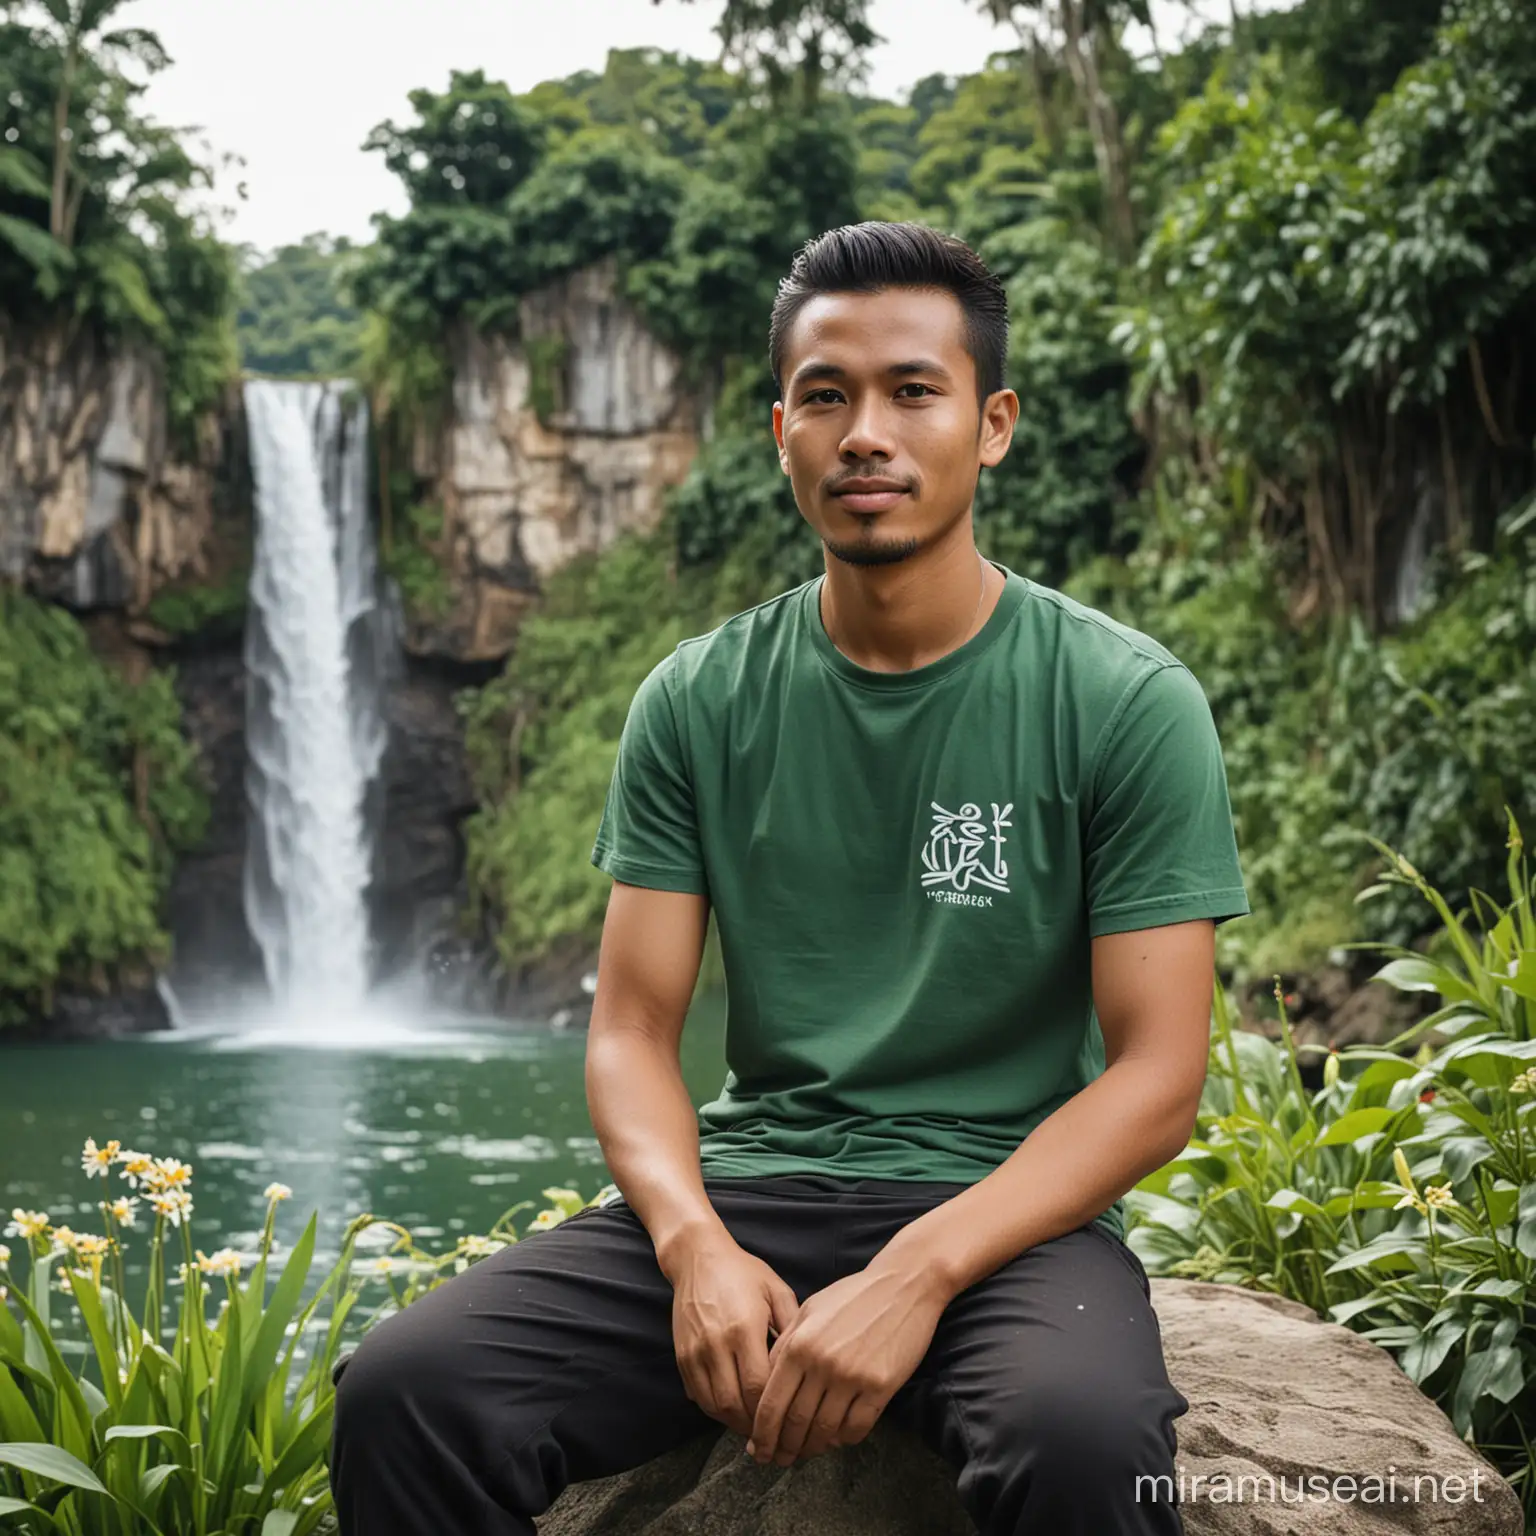 Seorang laki laki jawa INDONESIA usia 25 tahun, wajah bersih,duduk di atas batu , memakai kaos warna hijau ,berlogo SIGIT DHK.
Baiground ada air terjun ada danau ada bunga bunga
